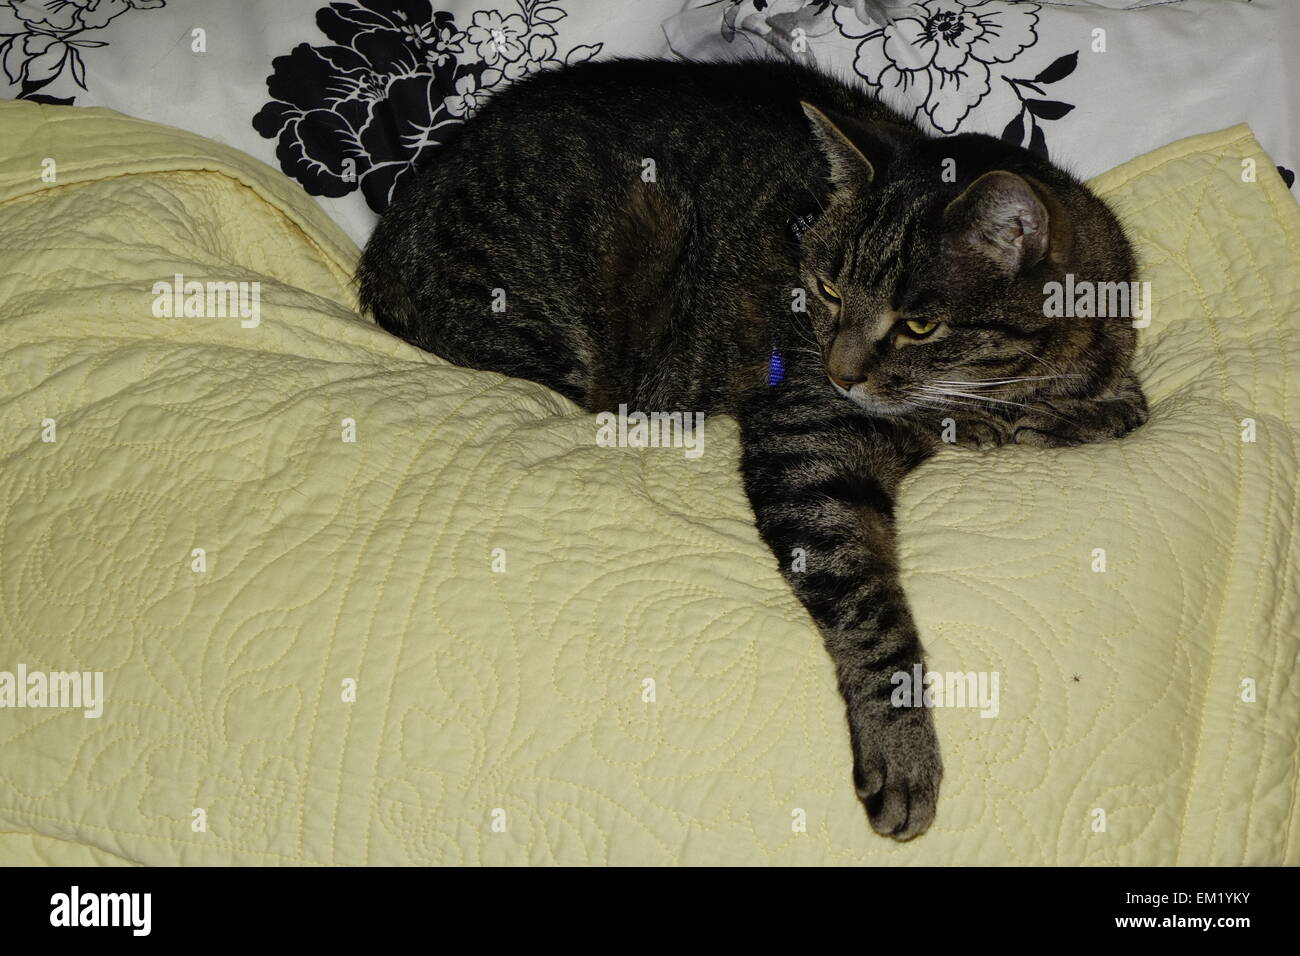 Chat tigré confortablement allongé sur le lit Banque D'Images